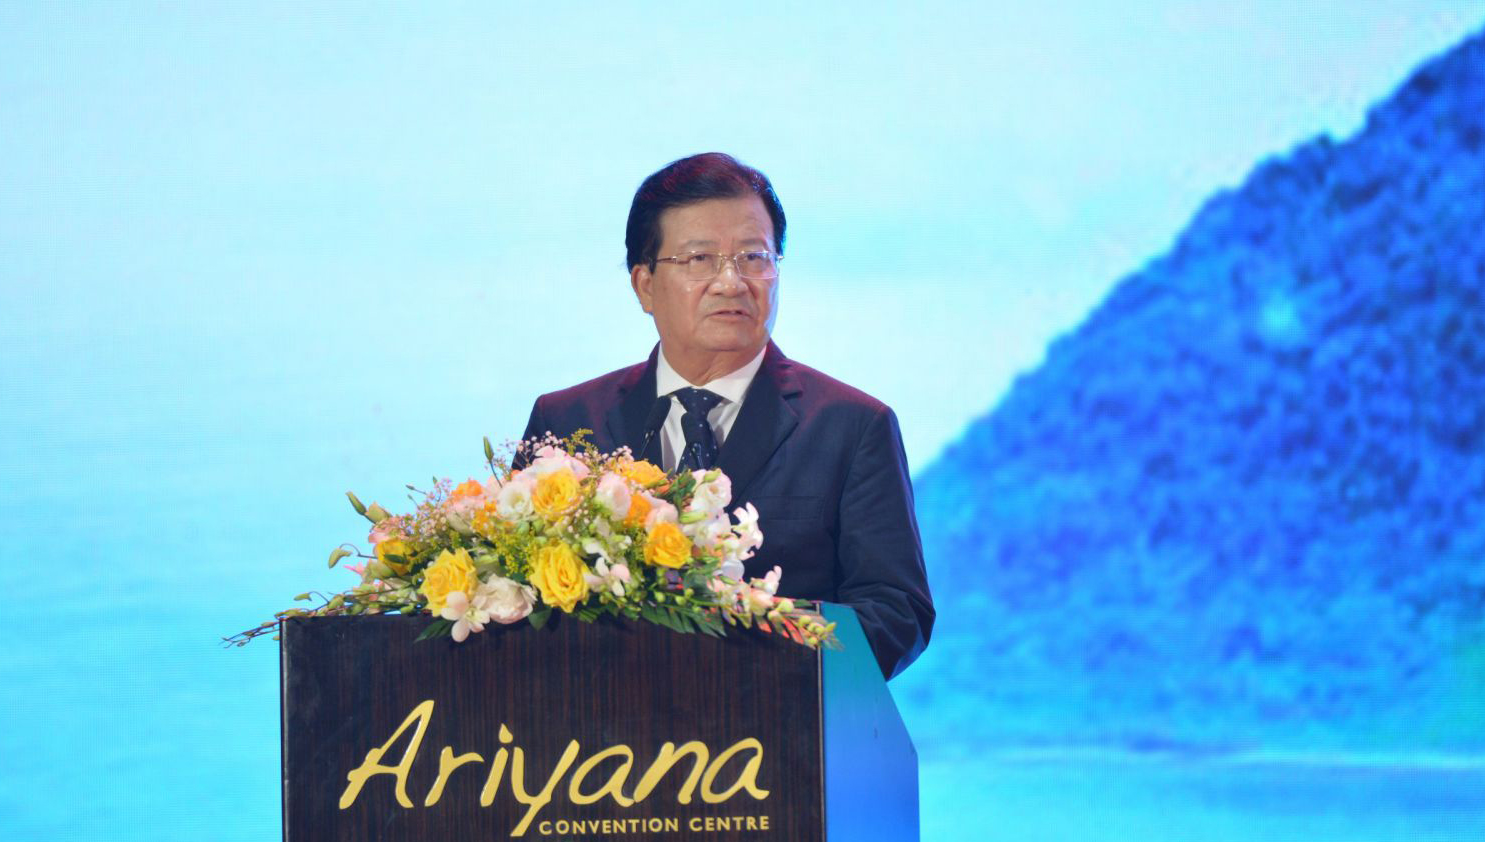 Phó Thủ tướng Trịnh Đình Dũng: "Cải cách hành chính chưa đáp ứng nhu cầu của doanh nghiệp"